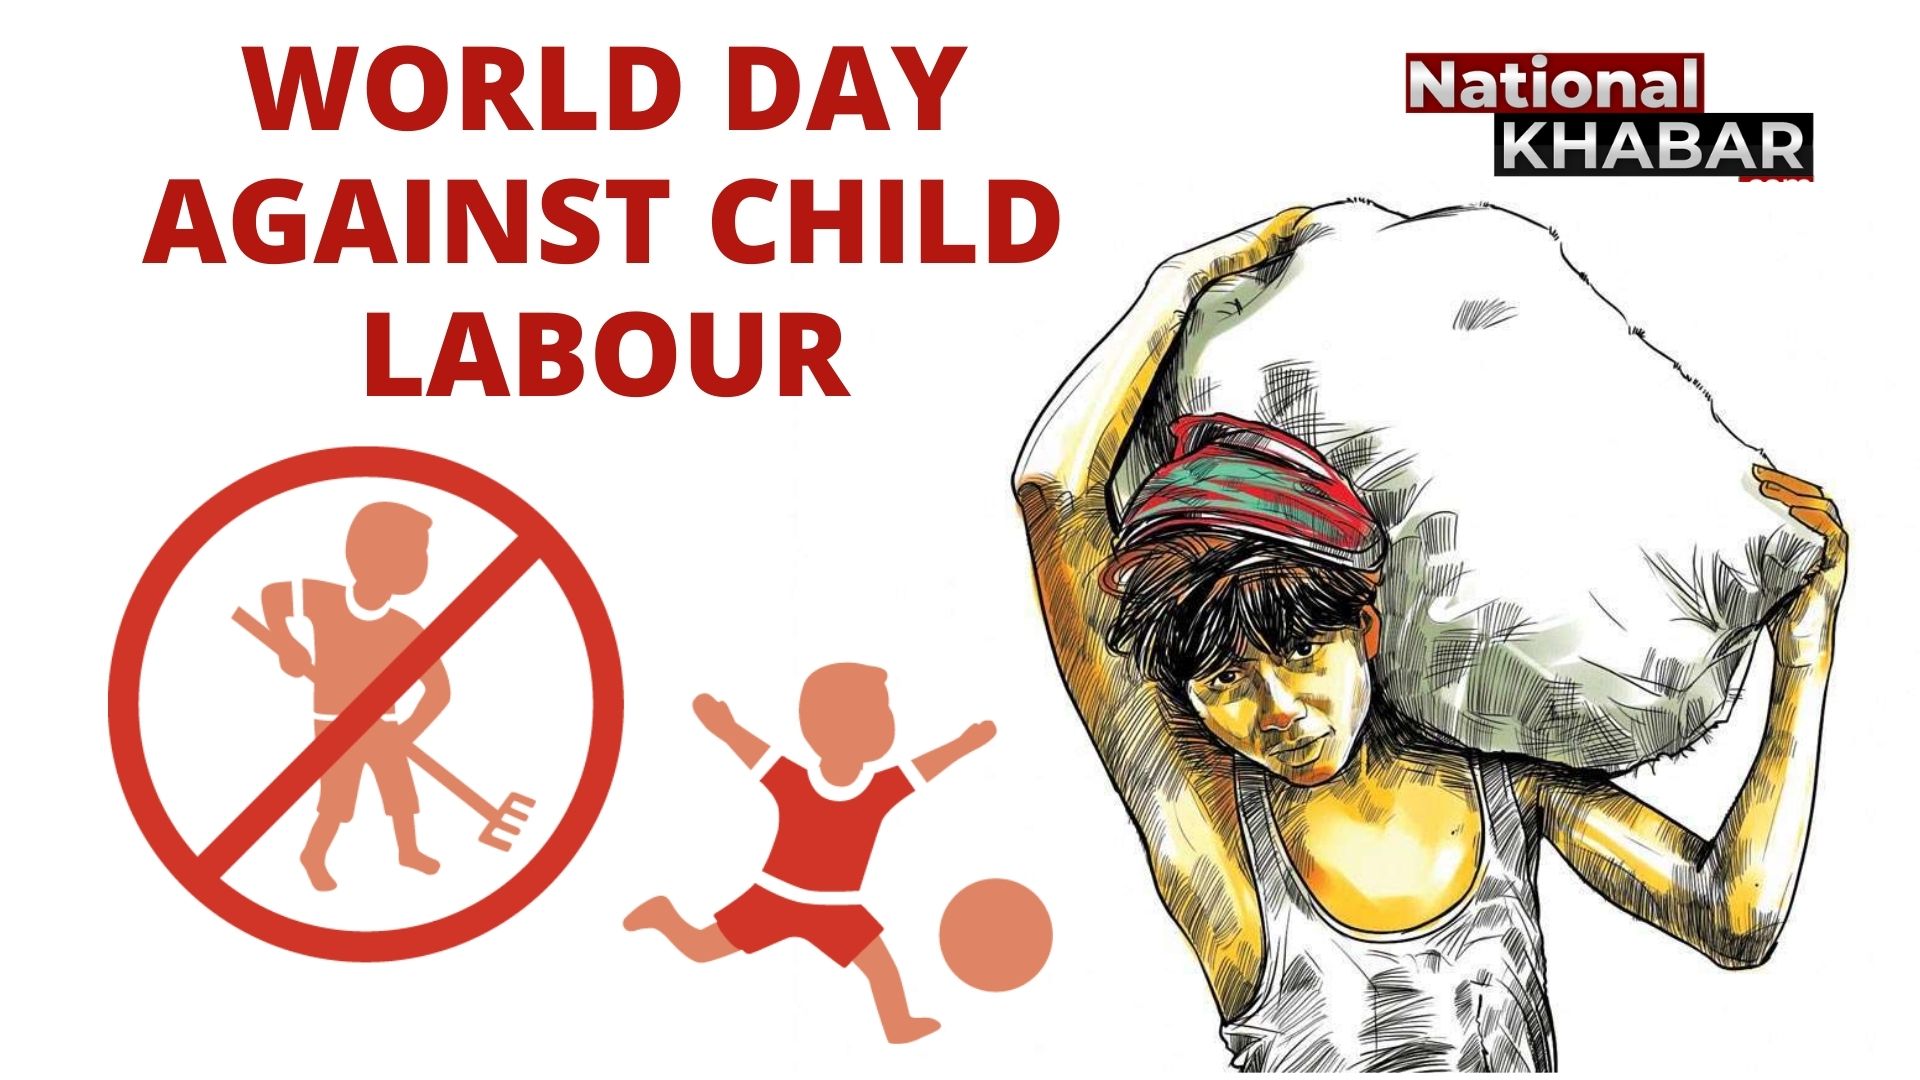 World Day Against Child Labour: बाल अधिकारों पर भी कहर बनकर टूटा कोरोना, दो दशक में पहली बार वैश्विक स्तर पर बढ़ा बालश्रम